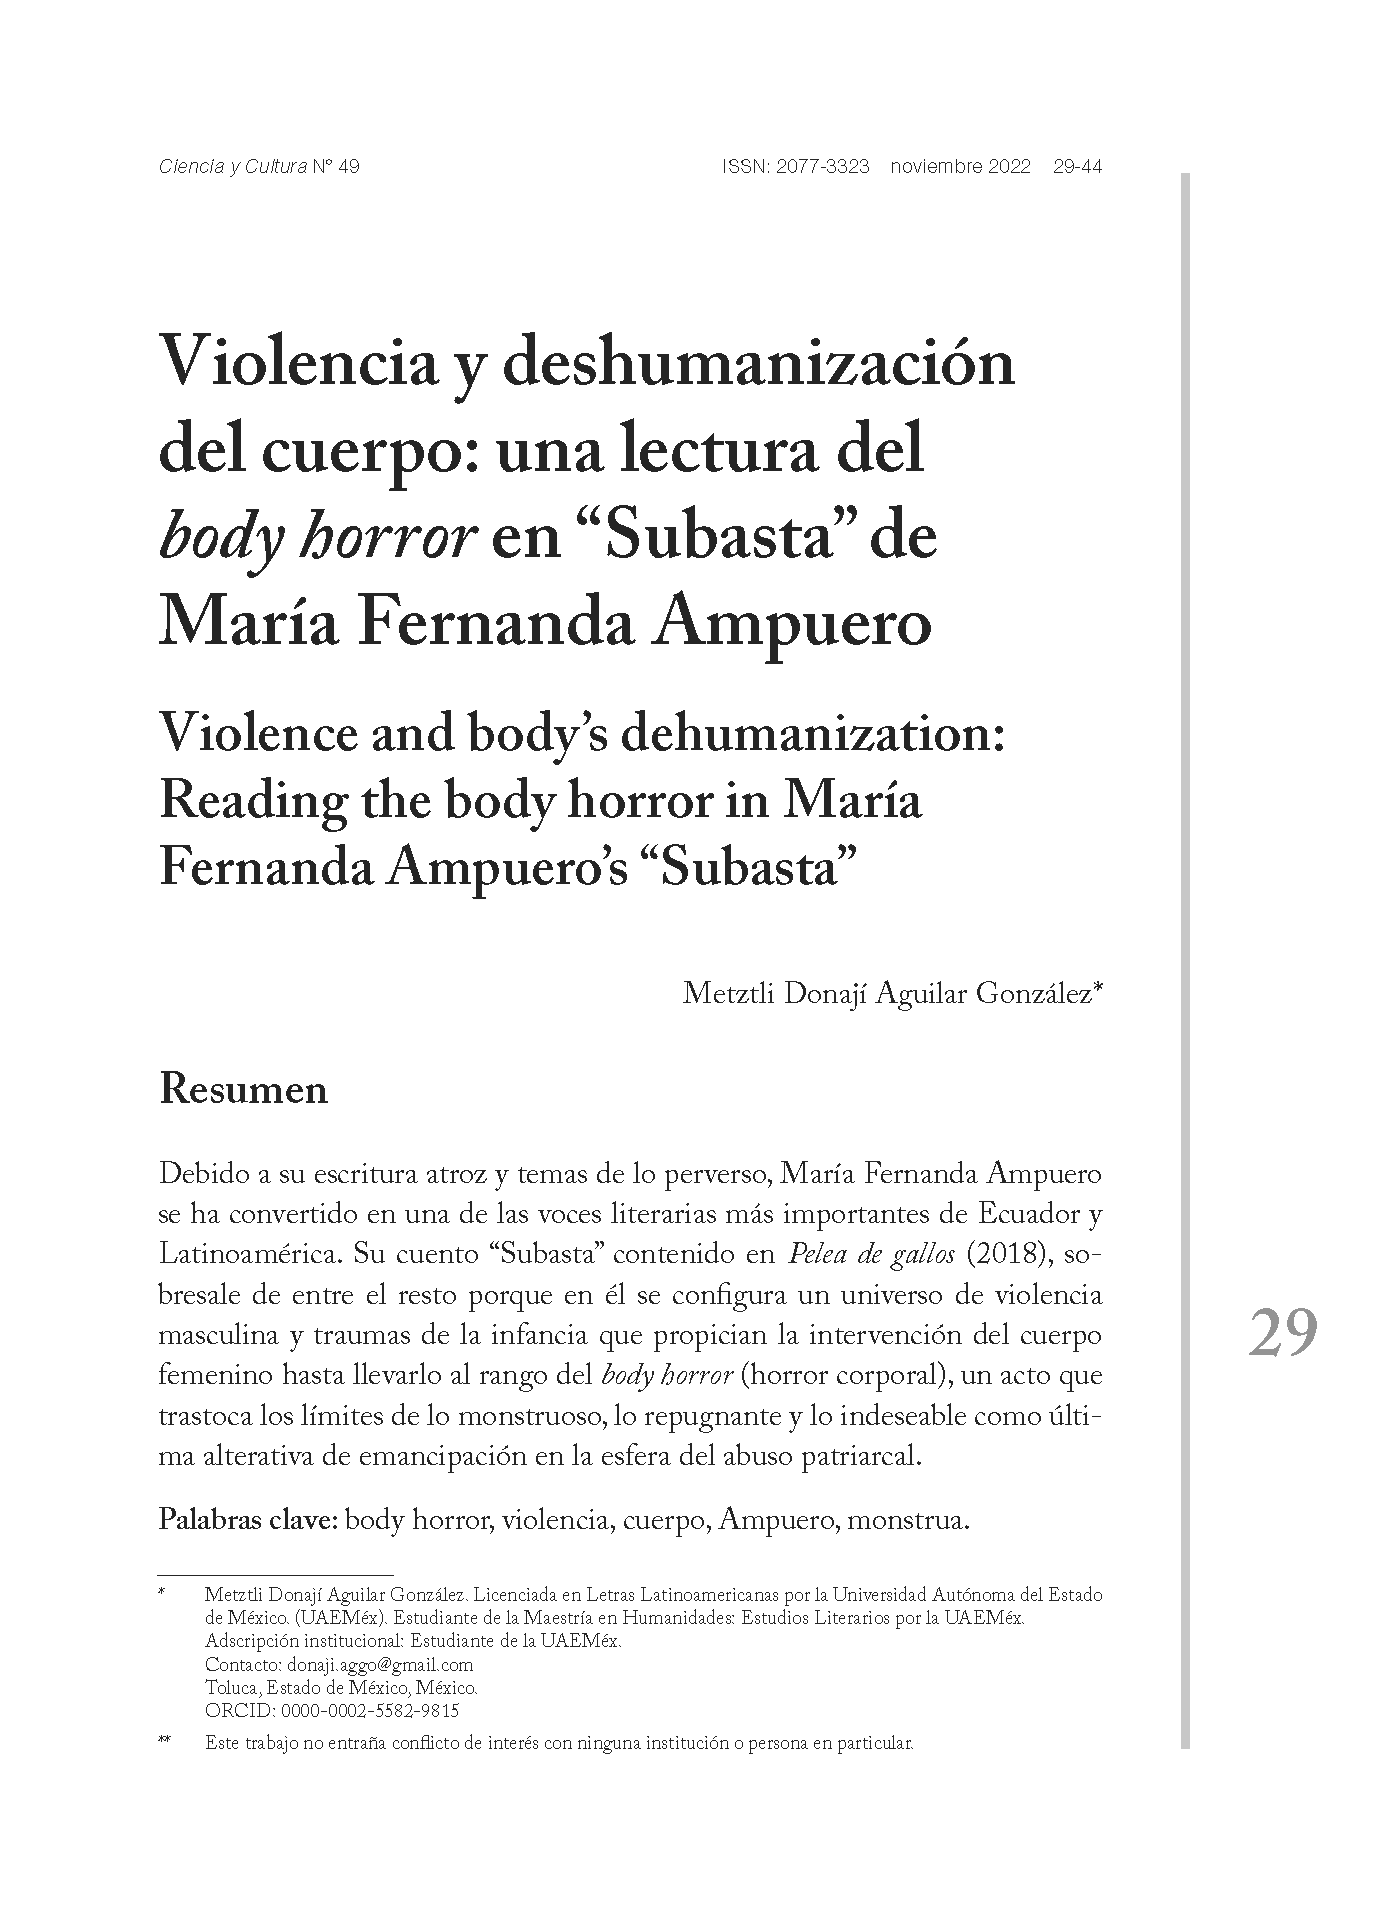 Violencia y deshumanización del cuerpo: una lectura del body horror en “Subasta” de María Fernanda Ampuero